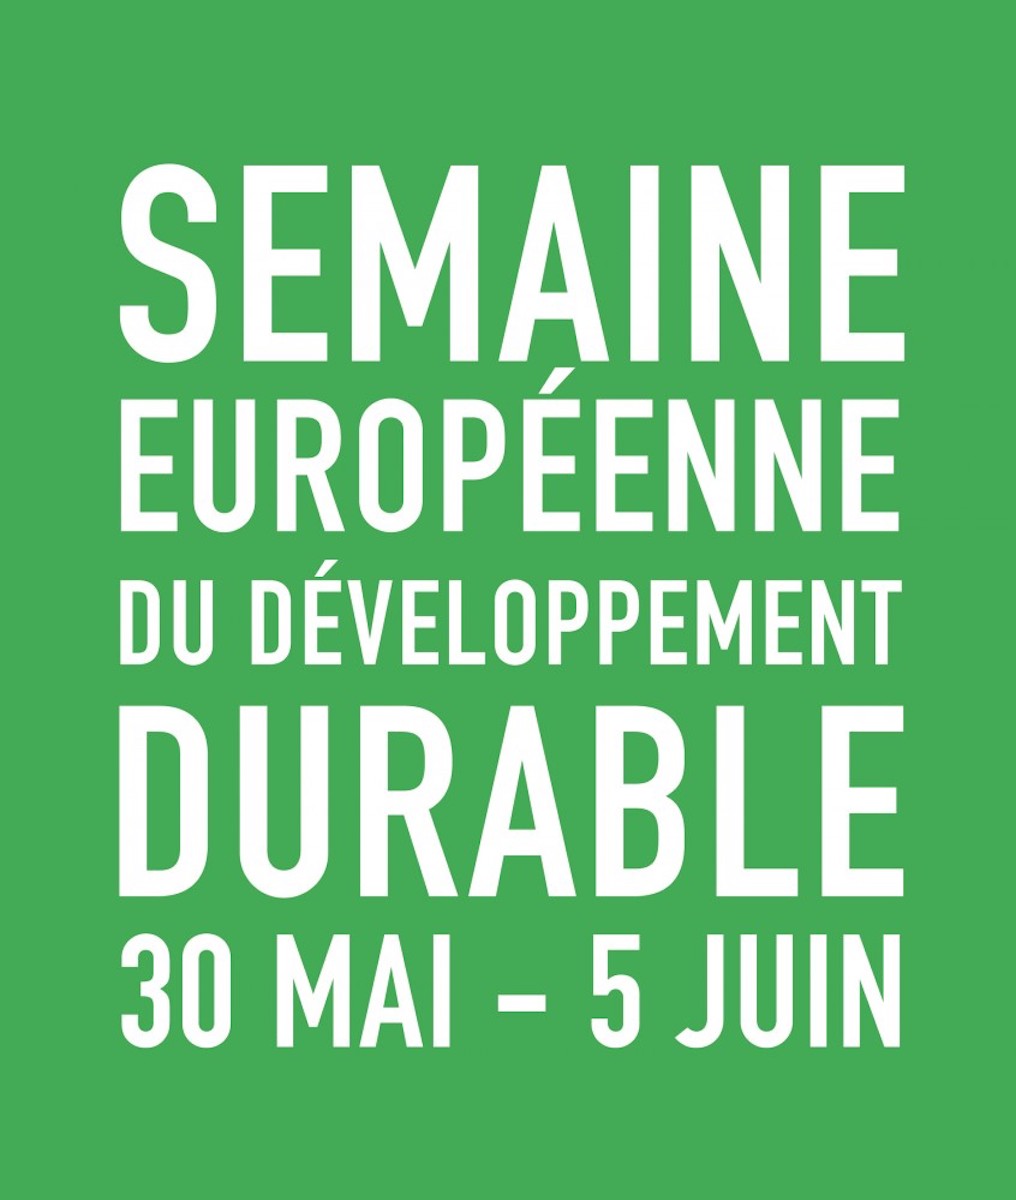 semaine européenne du développement durable affiche 3 mai au 5 juin 2019 environnement - blog déco - clemaroundthecorner